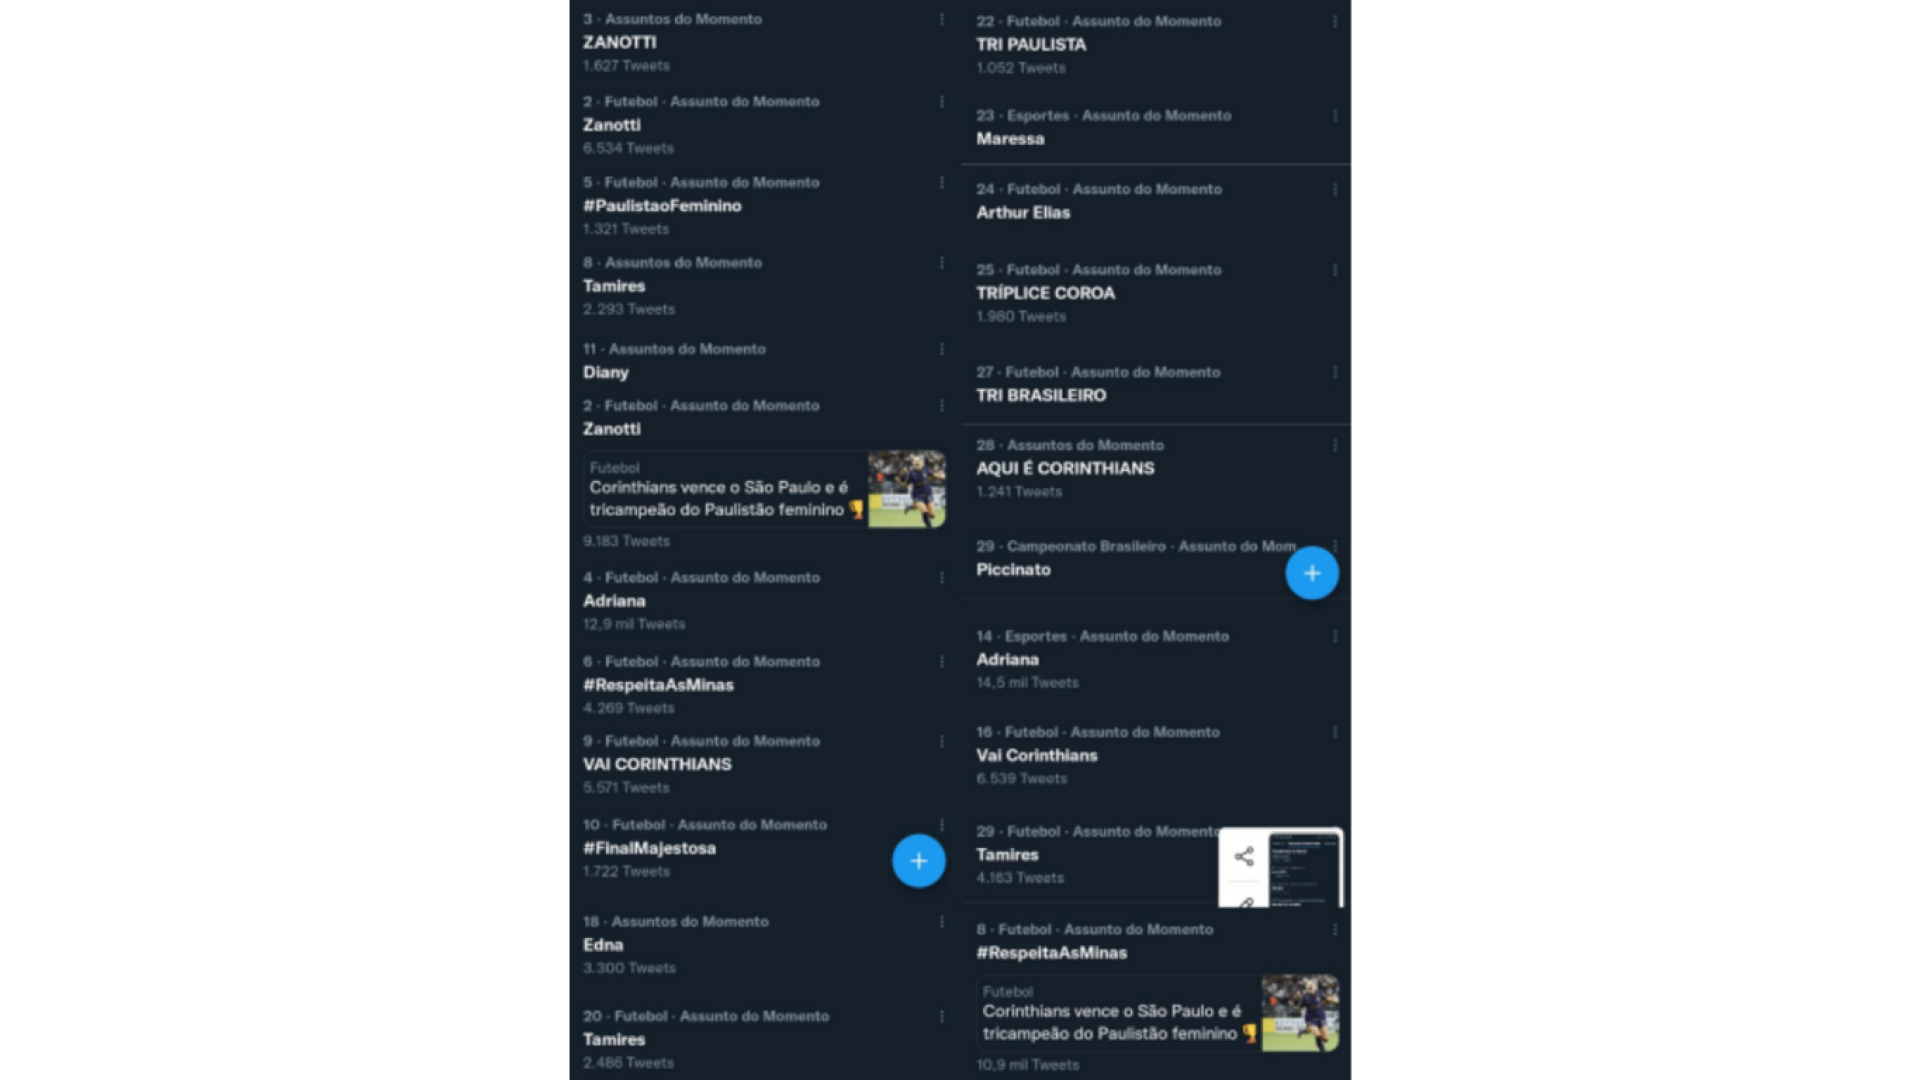 Prints de alguns trending topics do Twitter/X que falam sobre futebol de mulheres/Corinthians